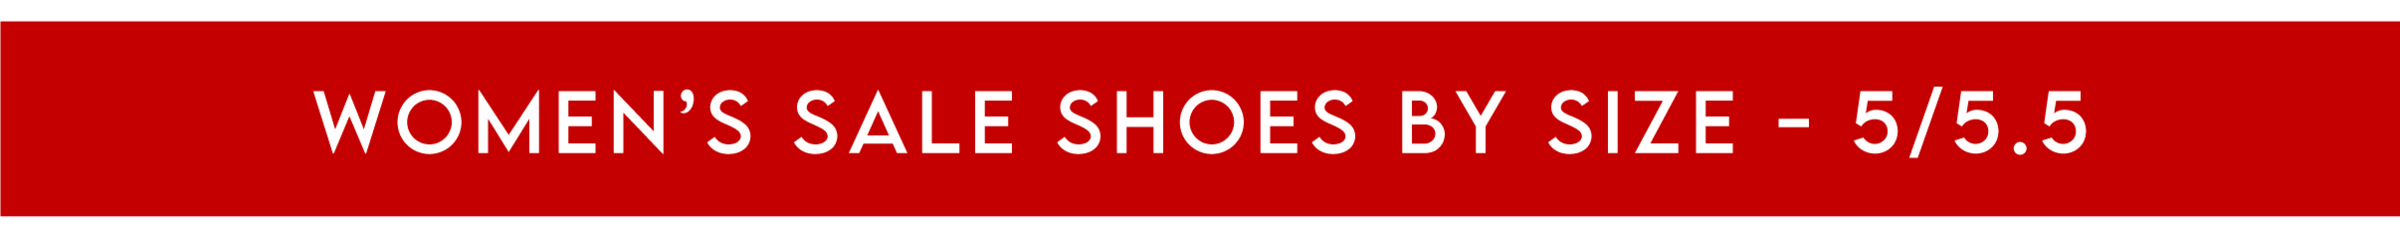 Women's Sale Shoes - Size 5/5.5